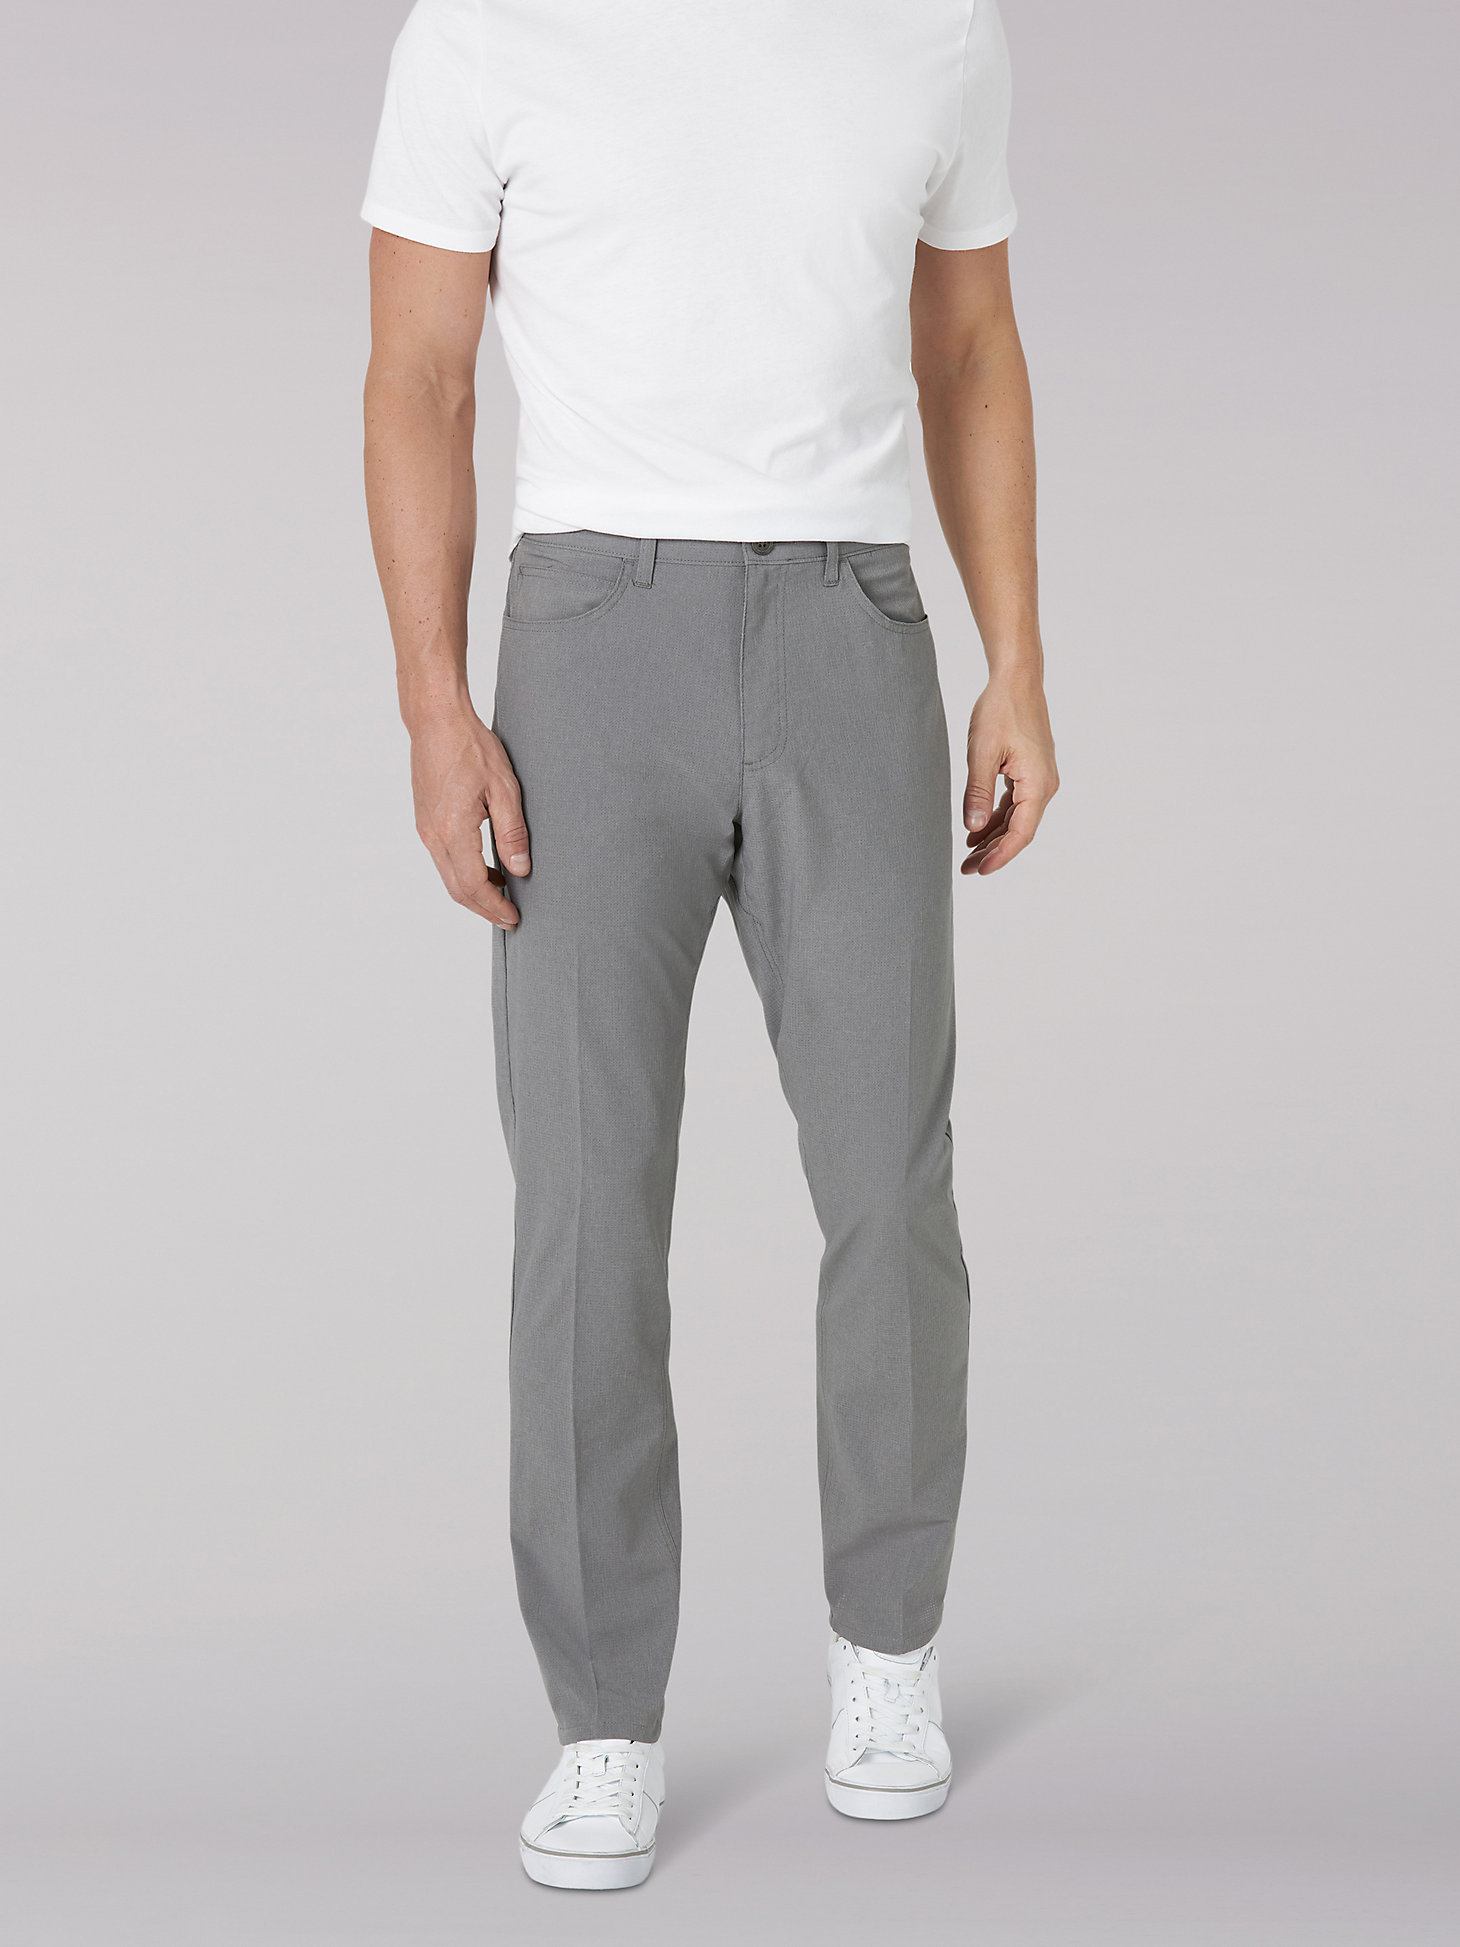 Men's Air-Flow Slim Tapered Pant in HD Grey main view